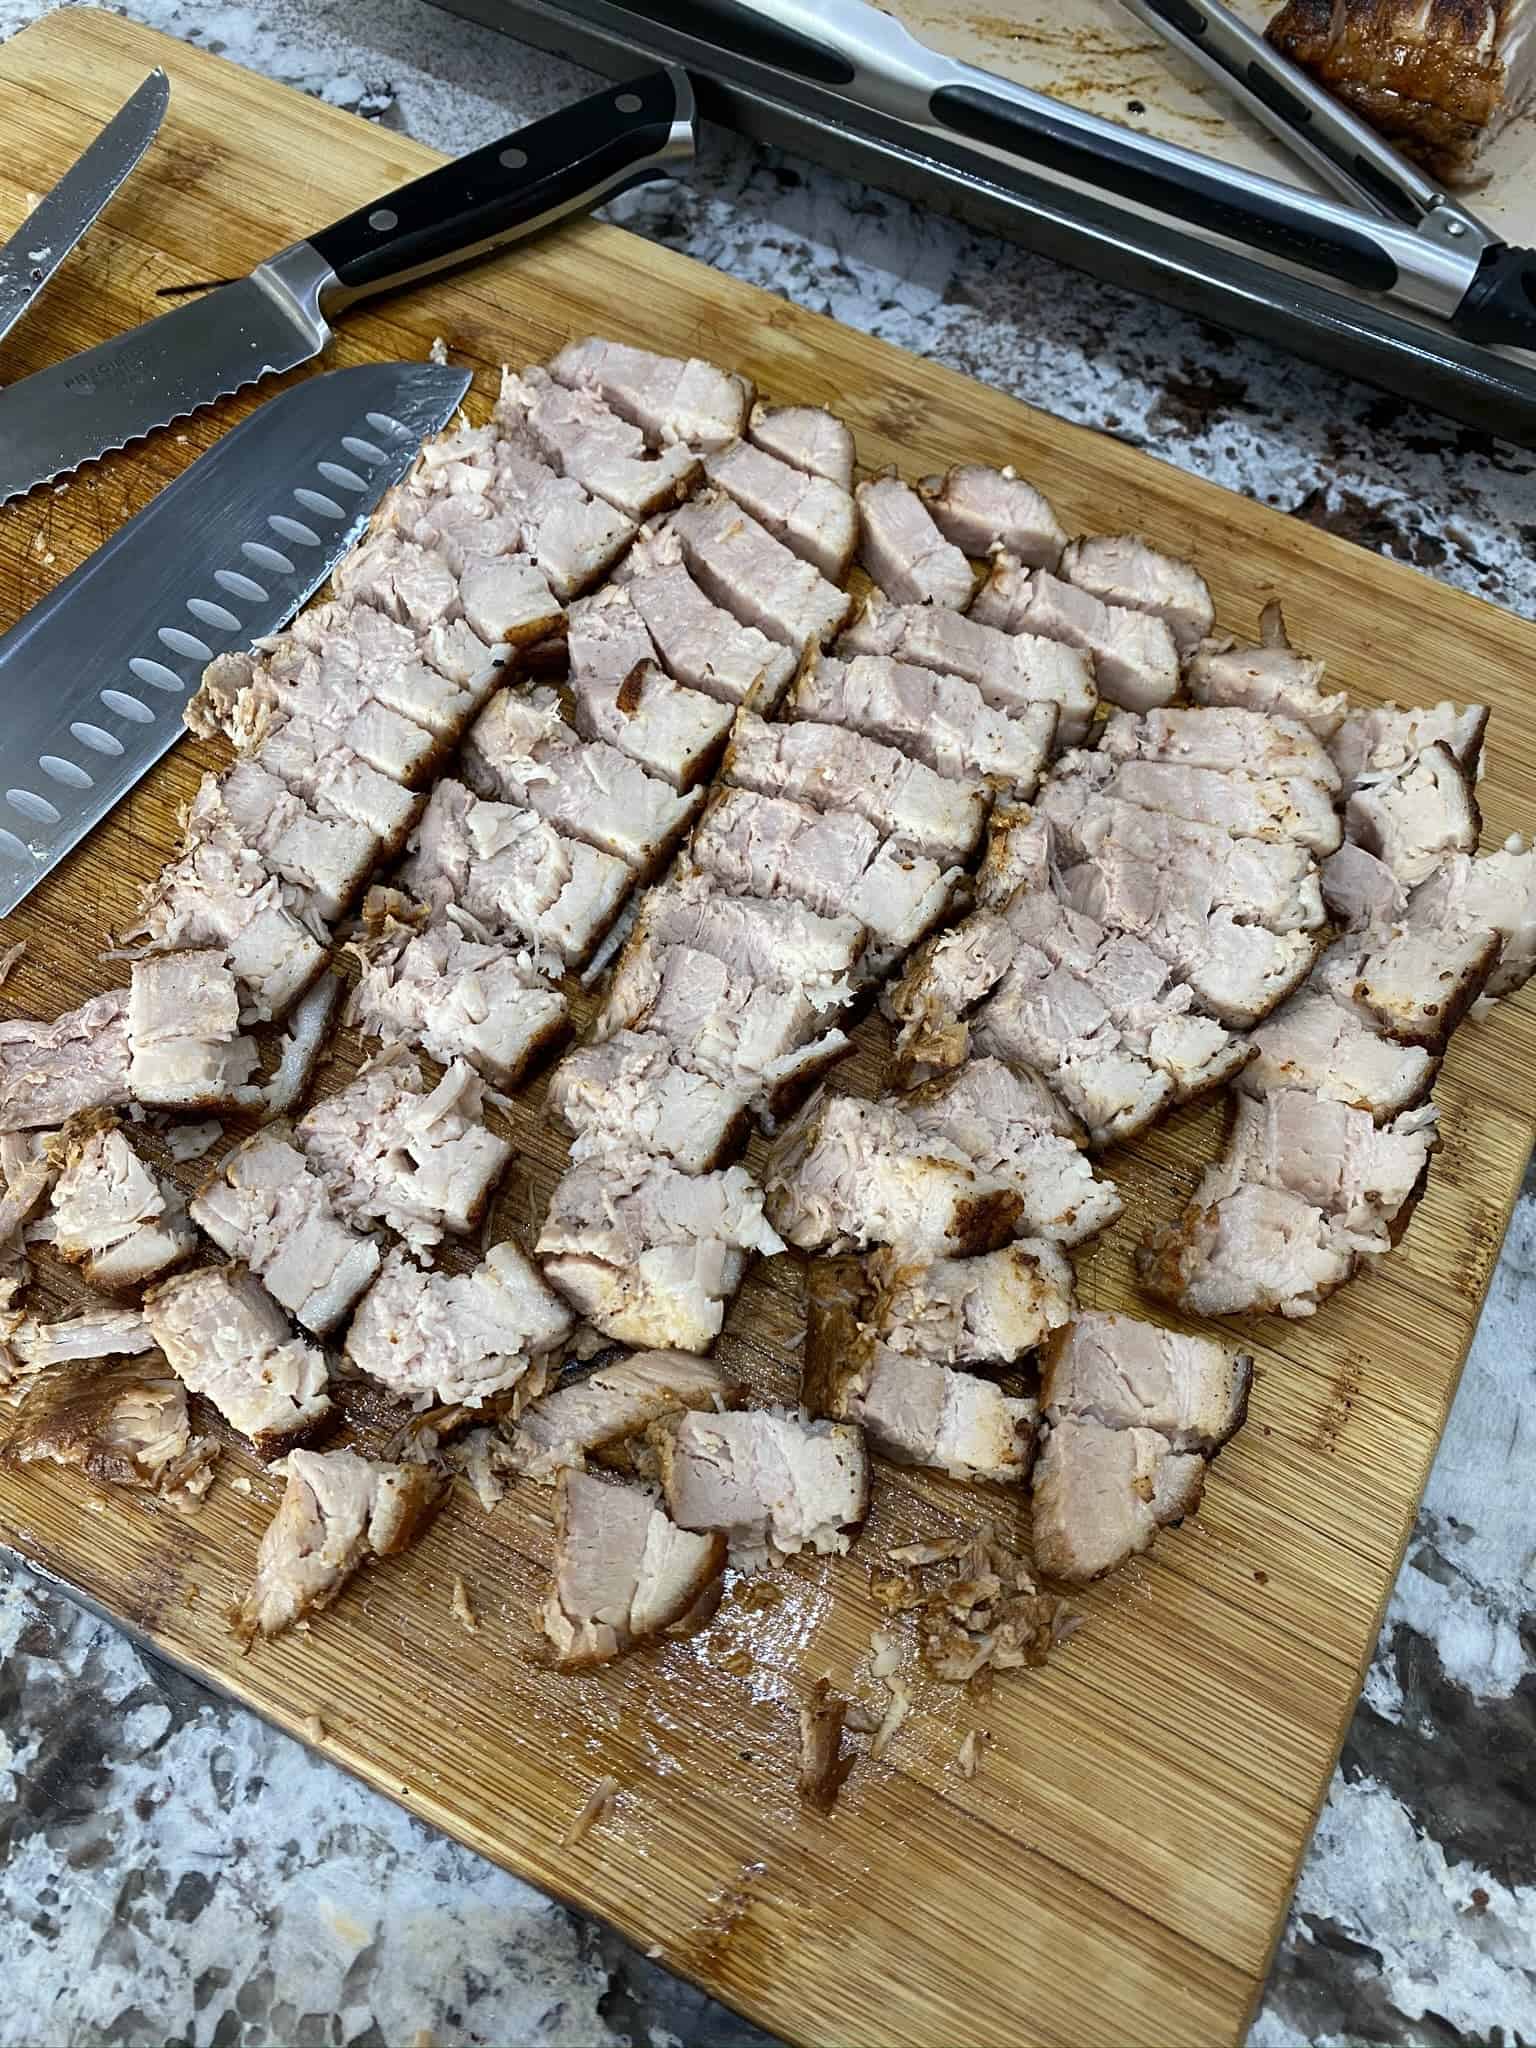 Carved pork